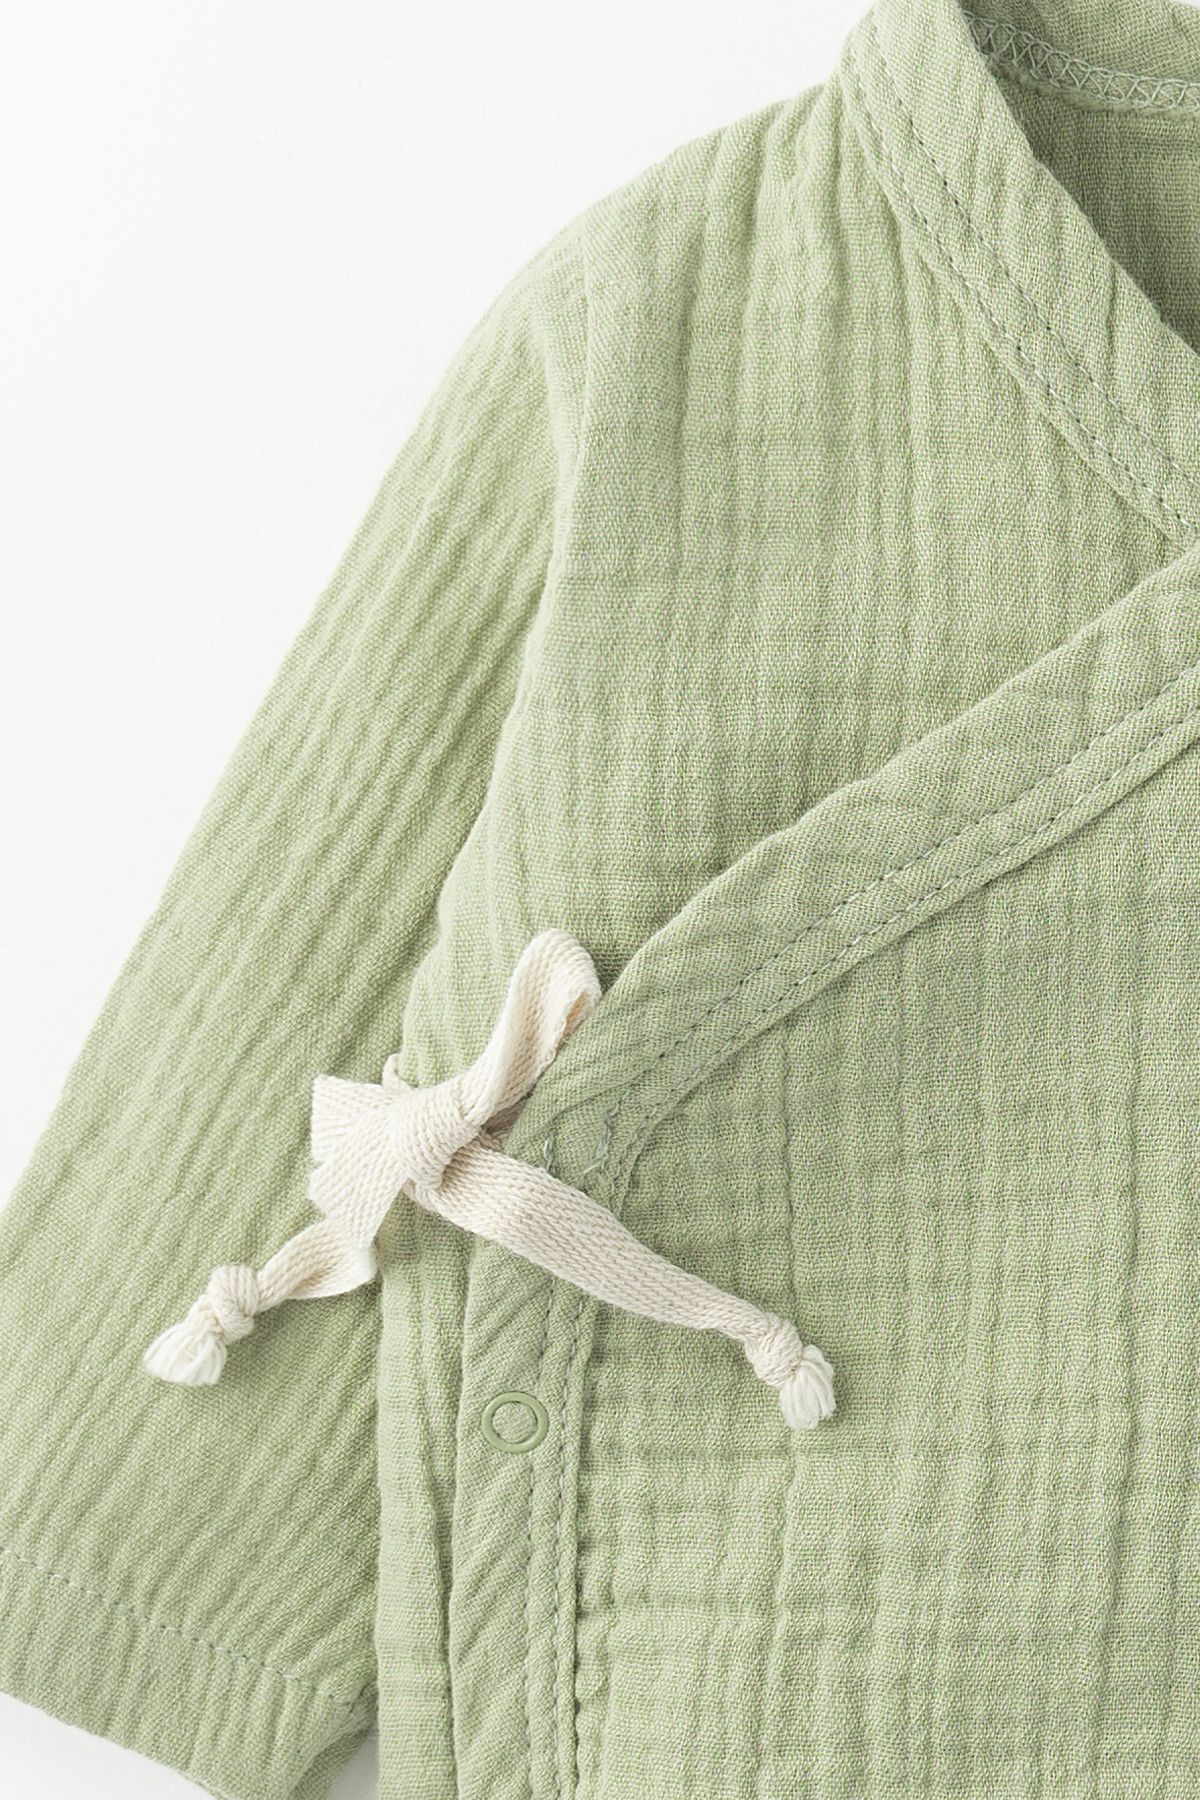 Aiko Kimono Yaka Çıtçıtlı Müslin Romper Tulum - Yeşil